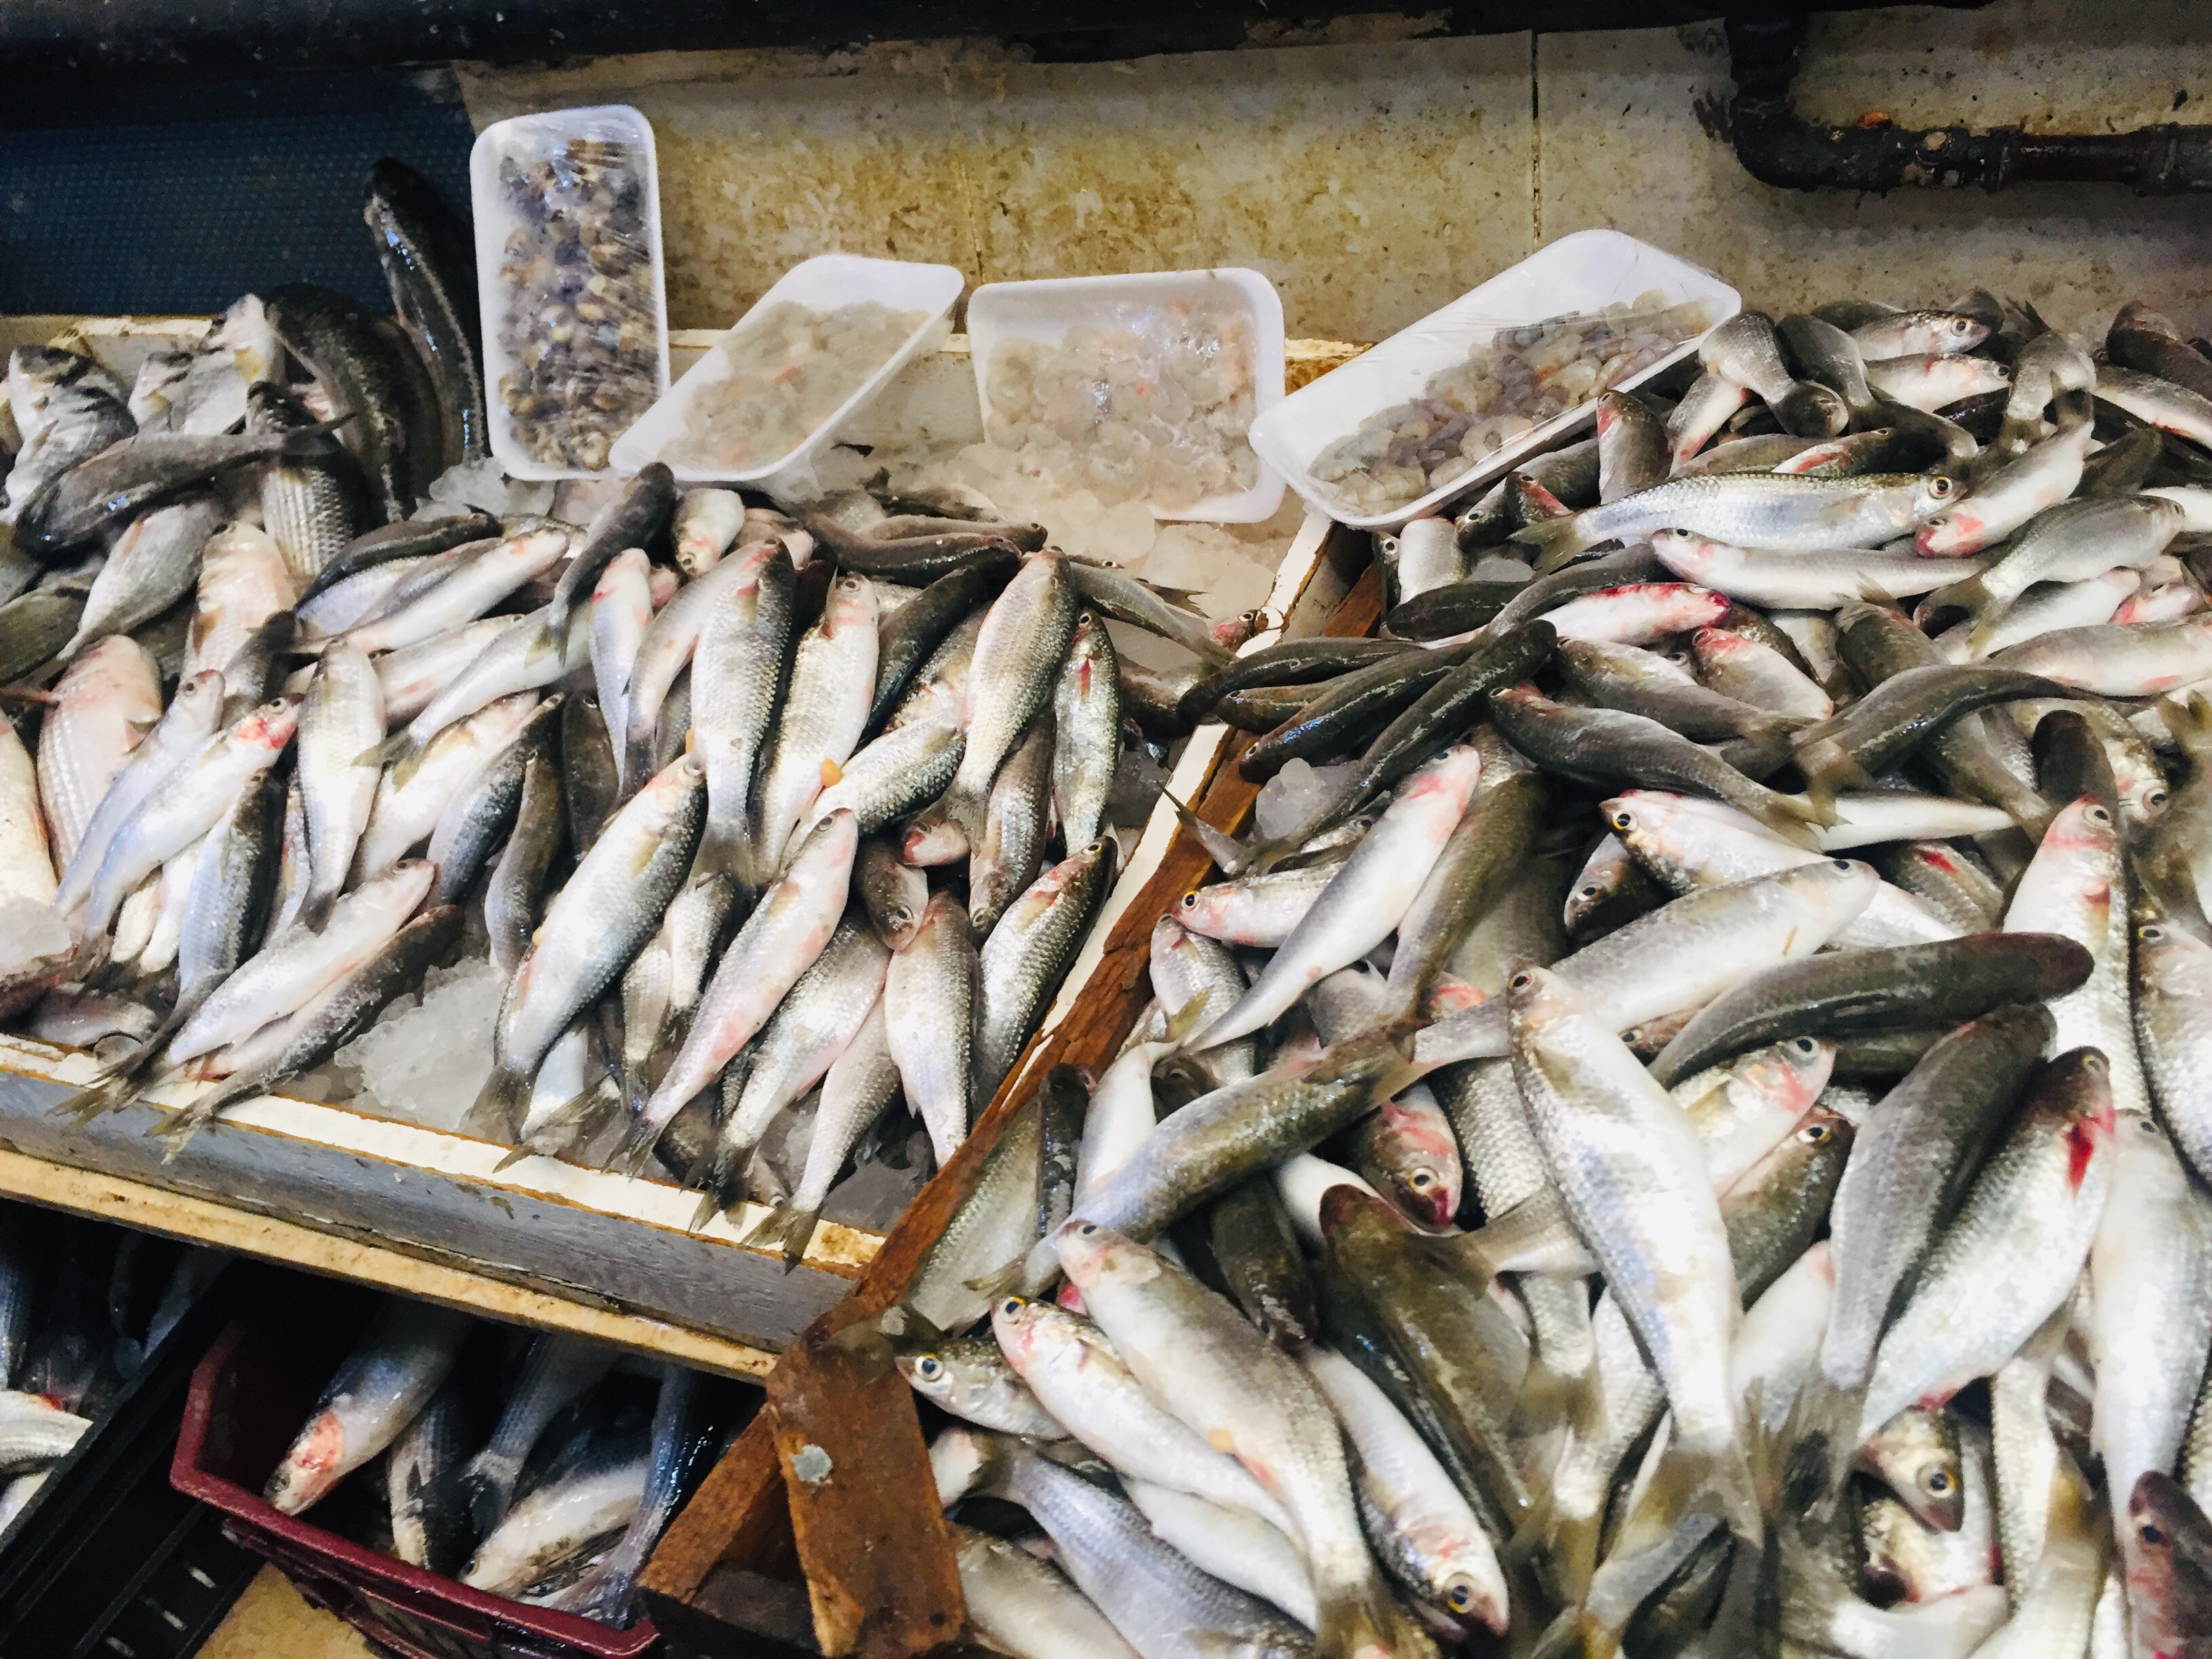  سوق الأسماك بالإسماعيلية (12)